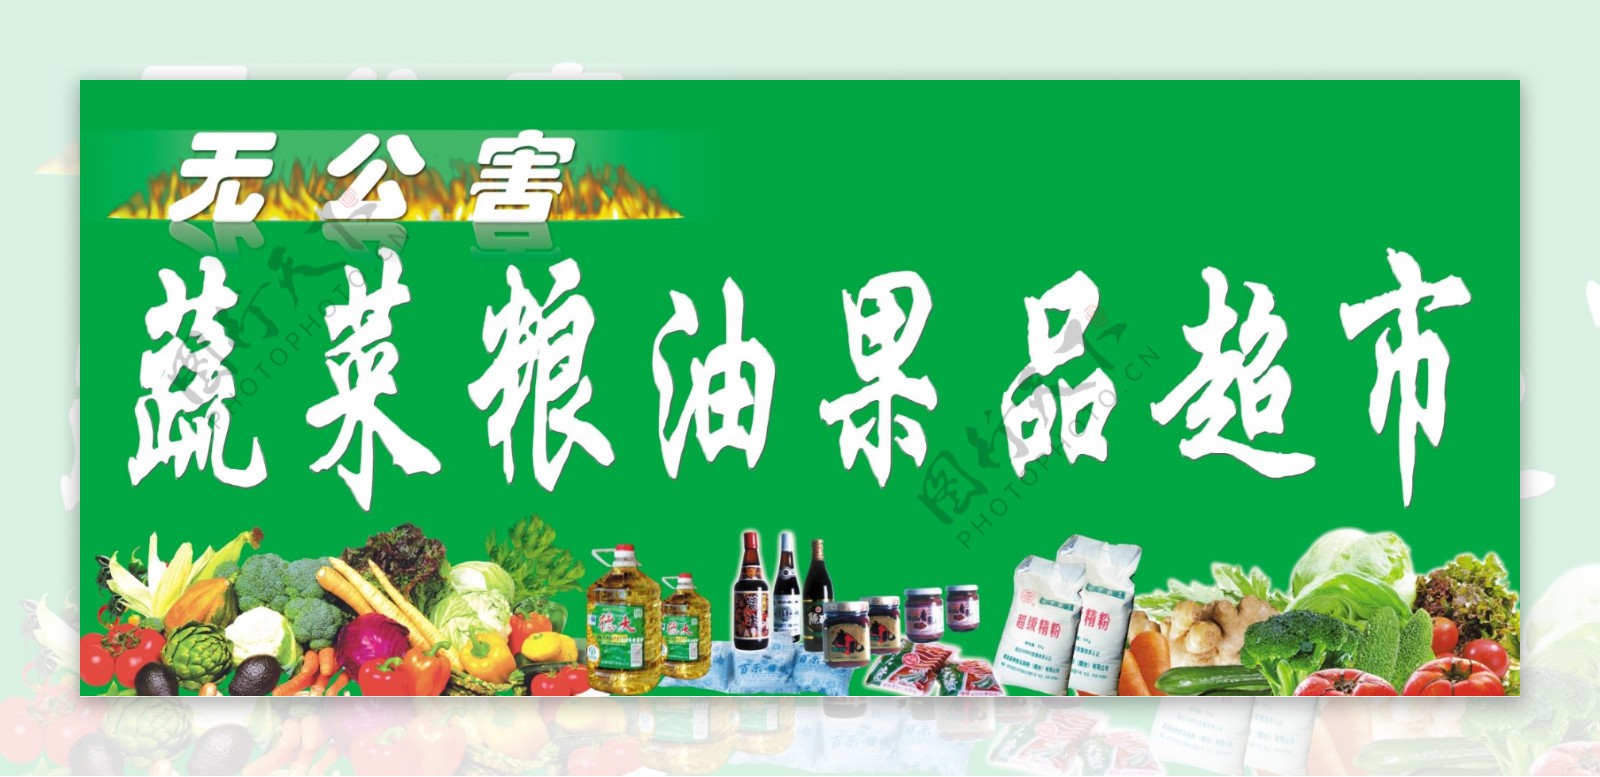 蔬菜粮油果品超市宣传广告图片